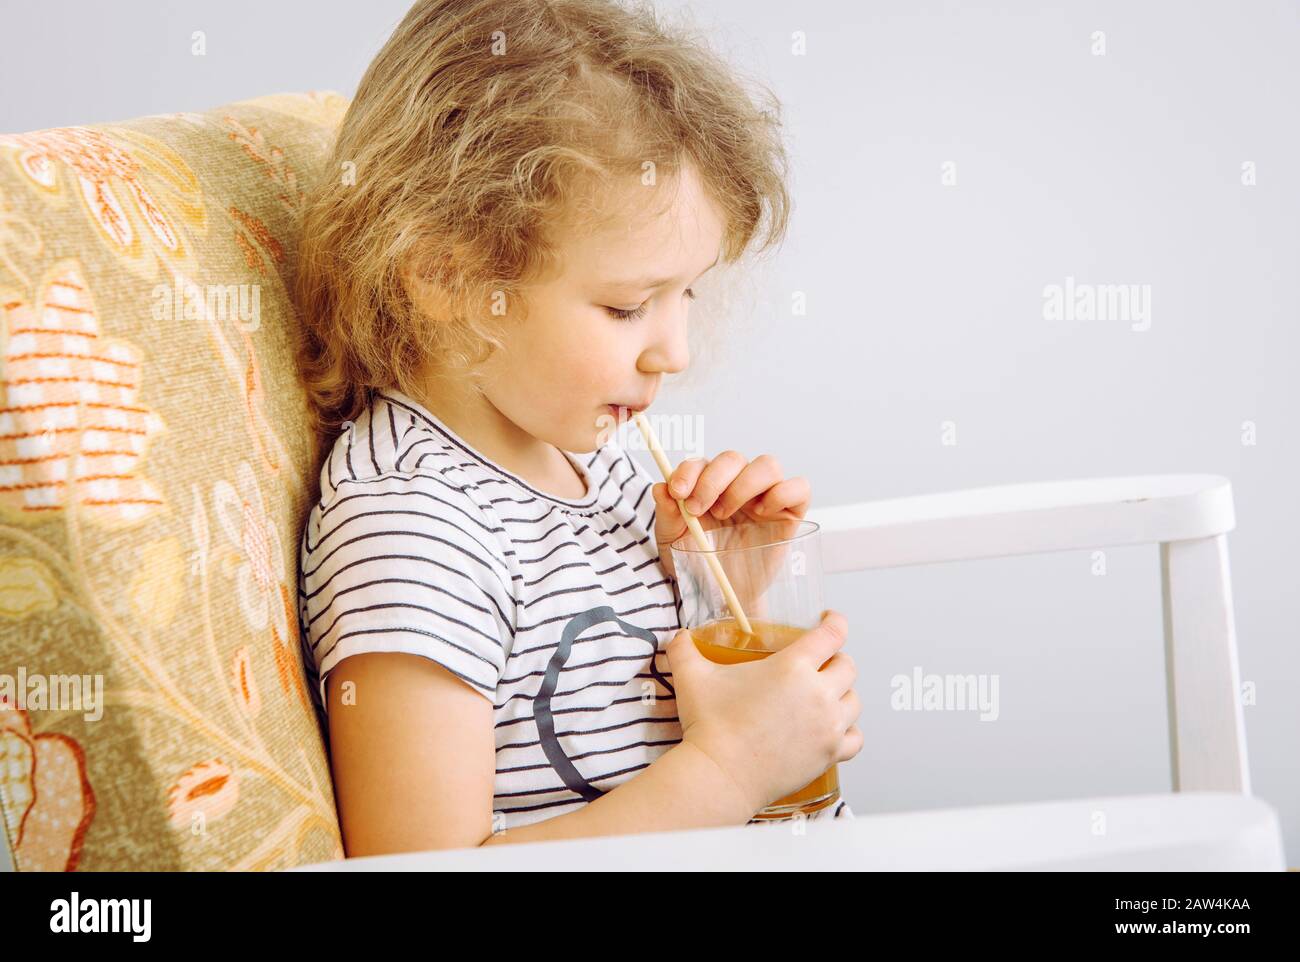 Vue rapprochée d'une jeune fille enfant à boire du jus mélangé avec de la paille de bambou biodégradable naturelle. Concept de style de vie sans plastique. Banque D'Images